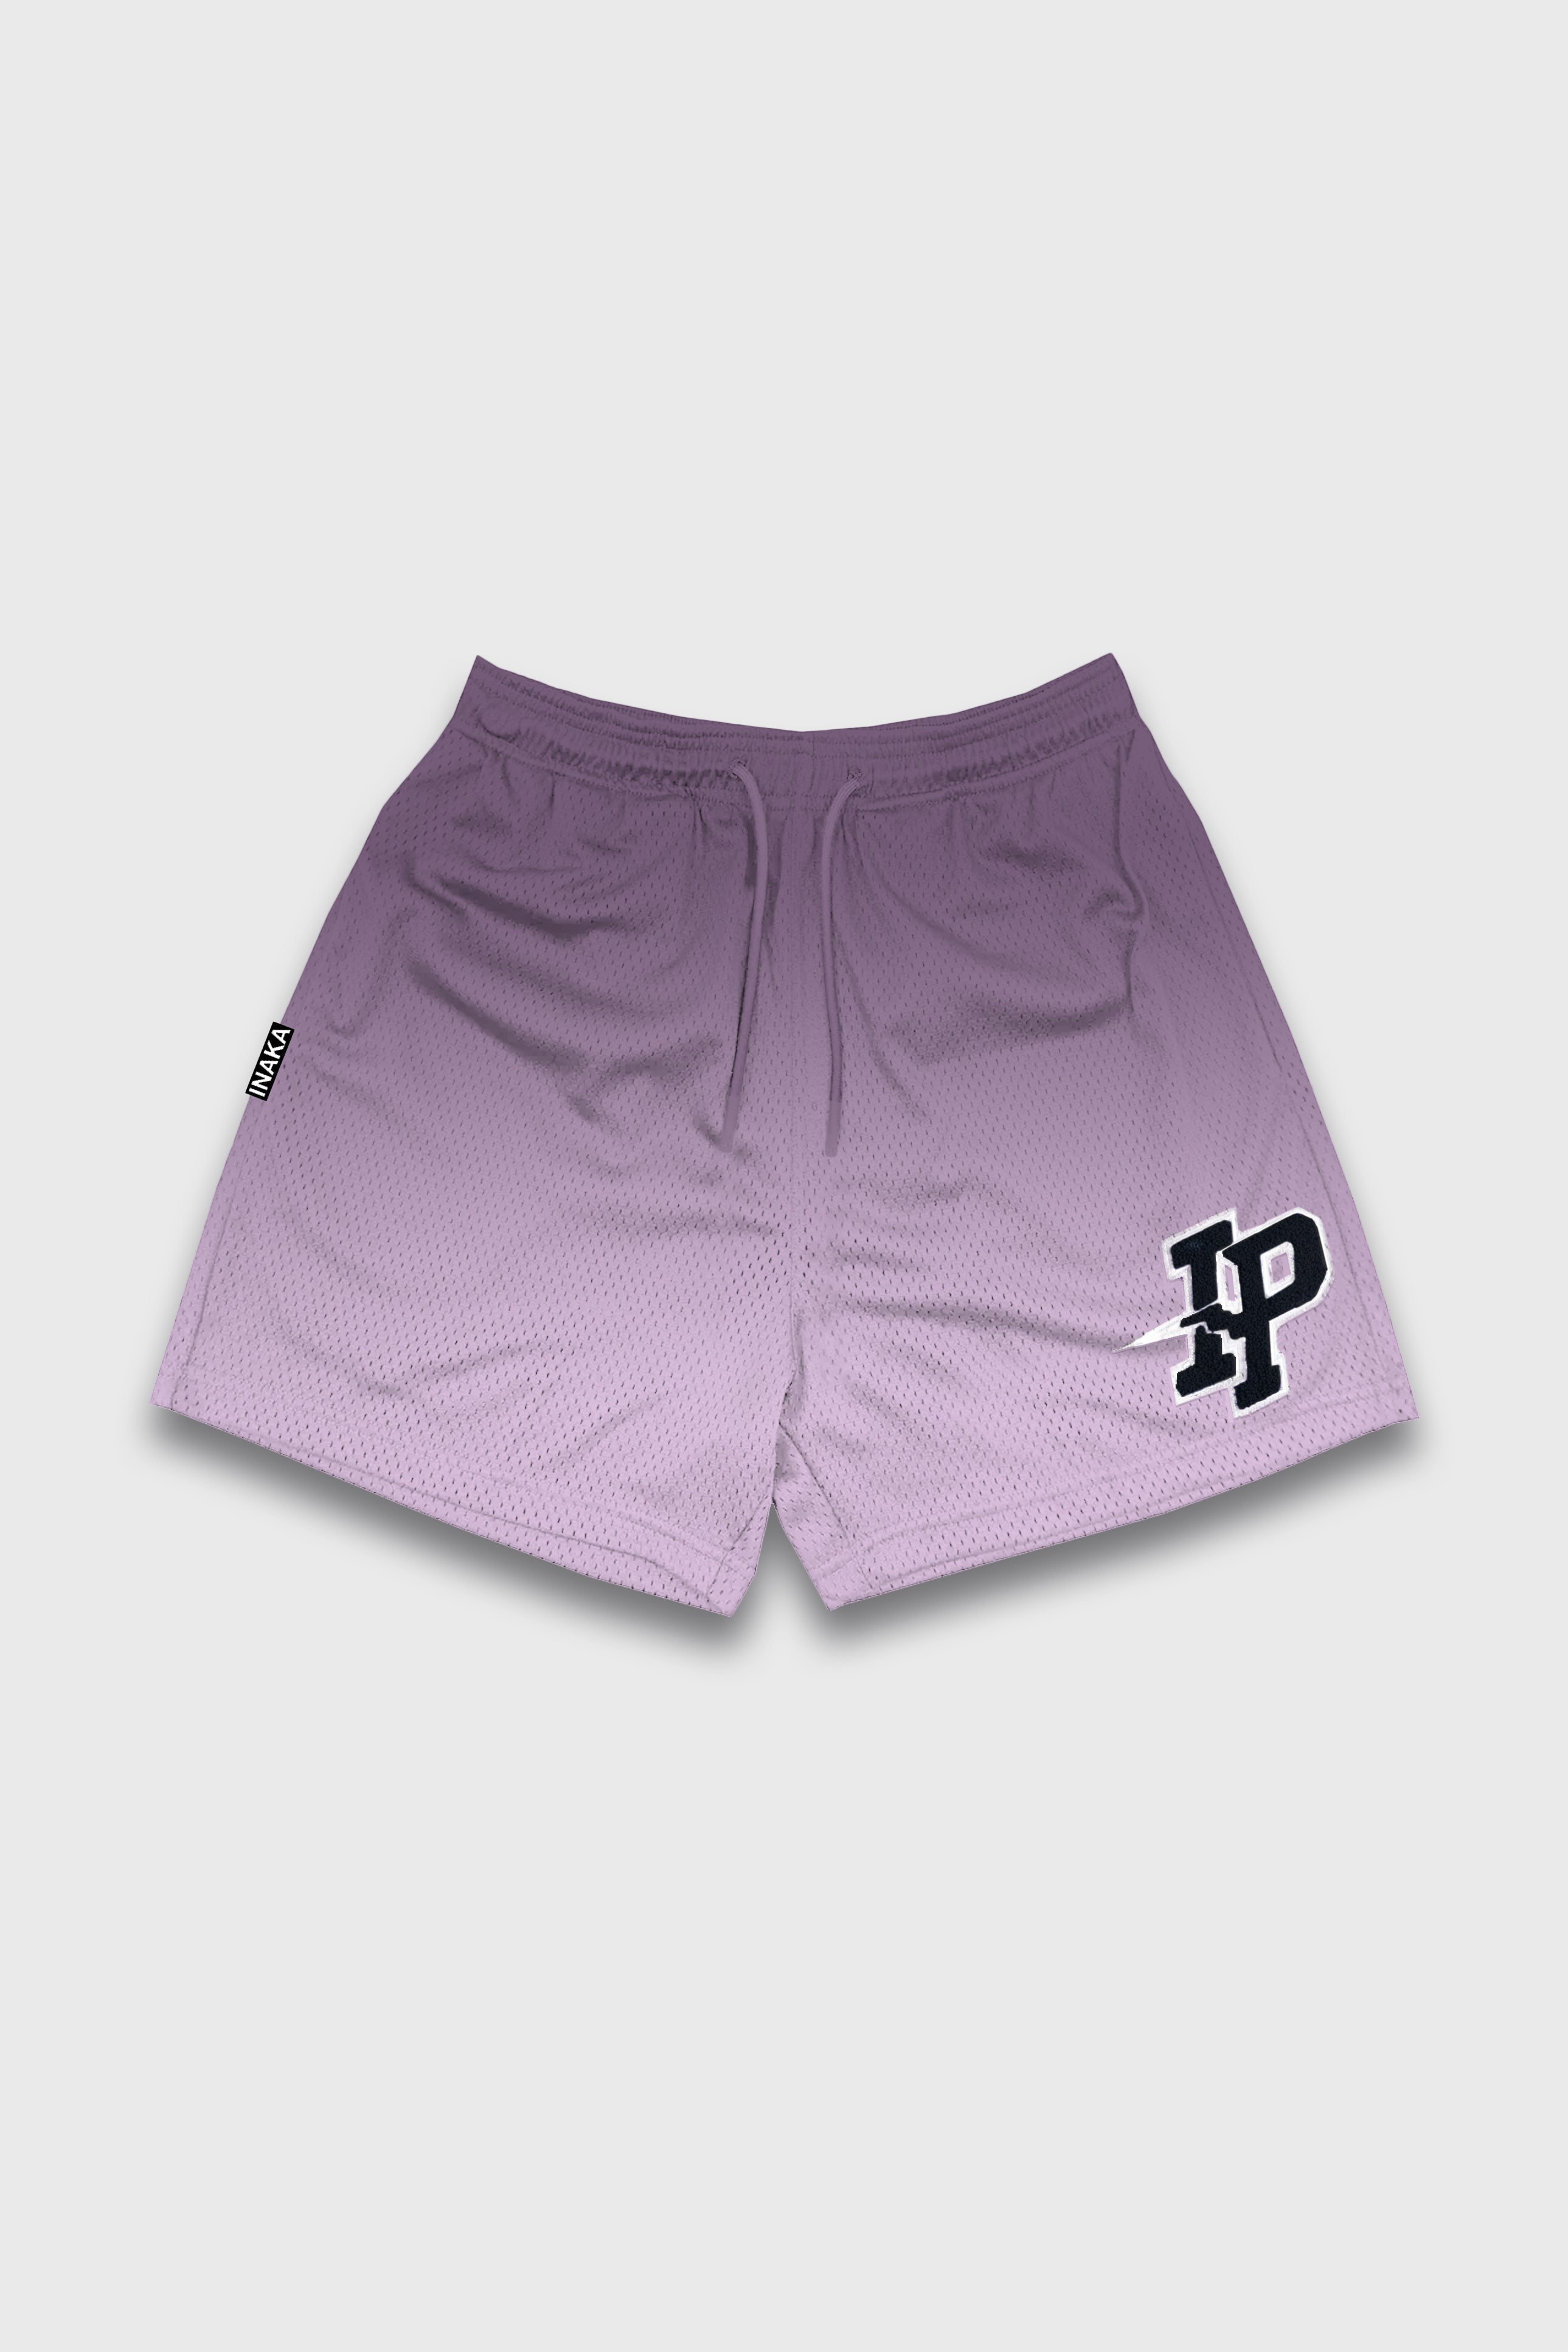 Men's Graphic Mesh Shorts - Purple Gradient